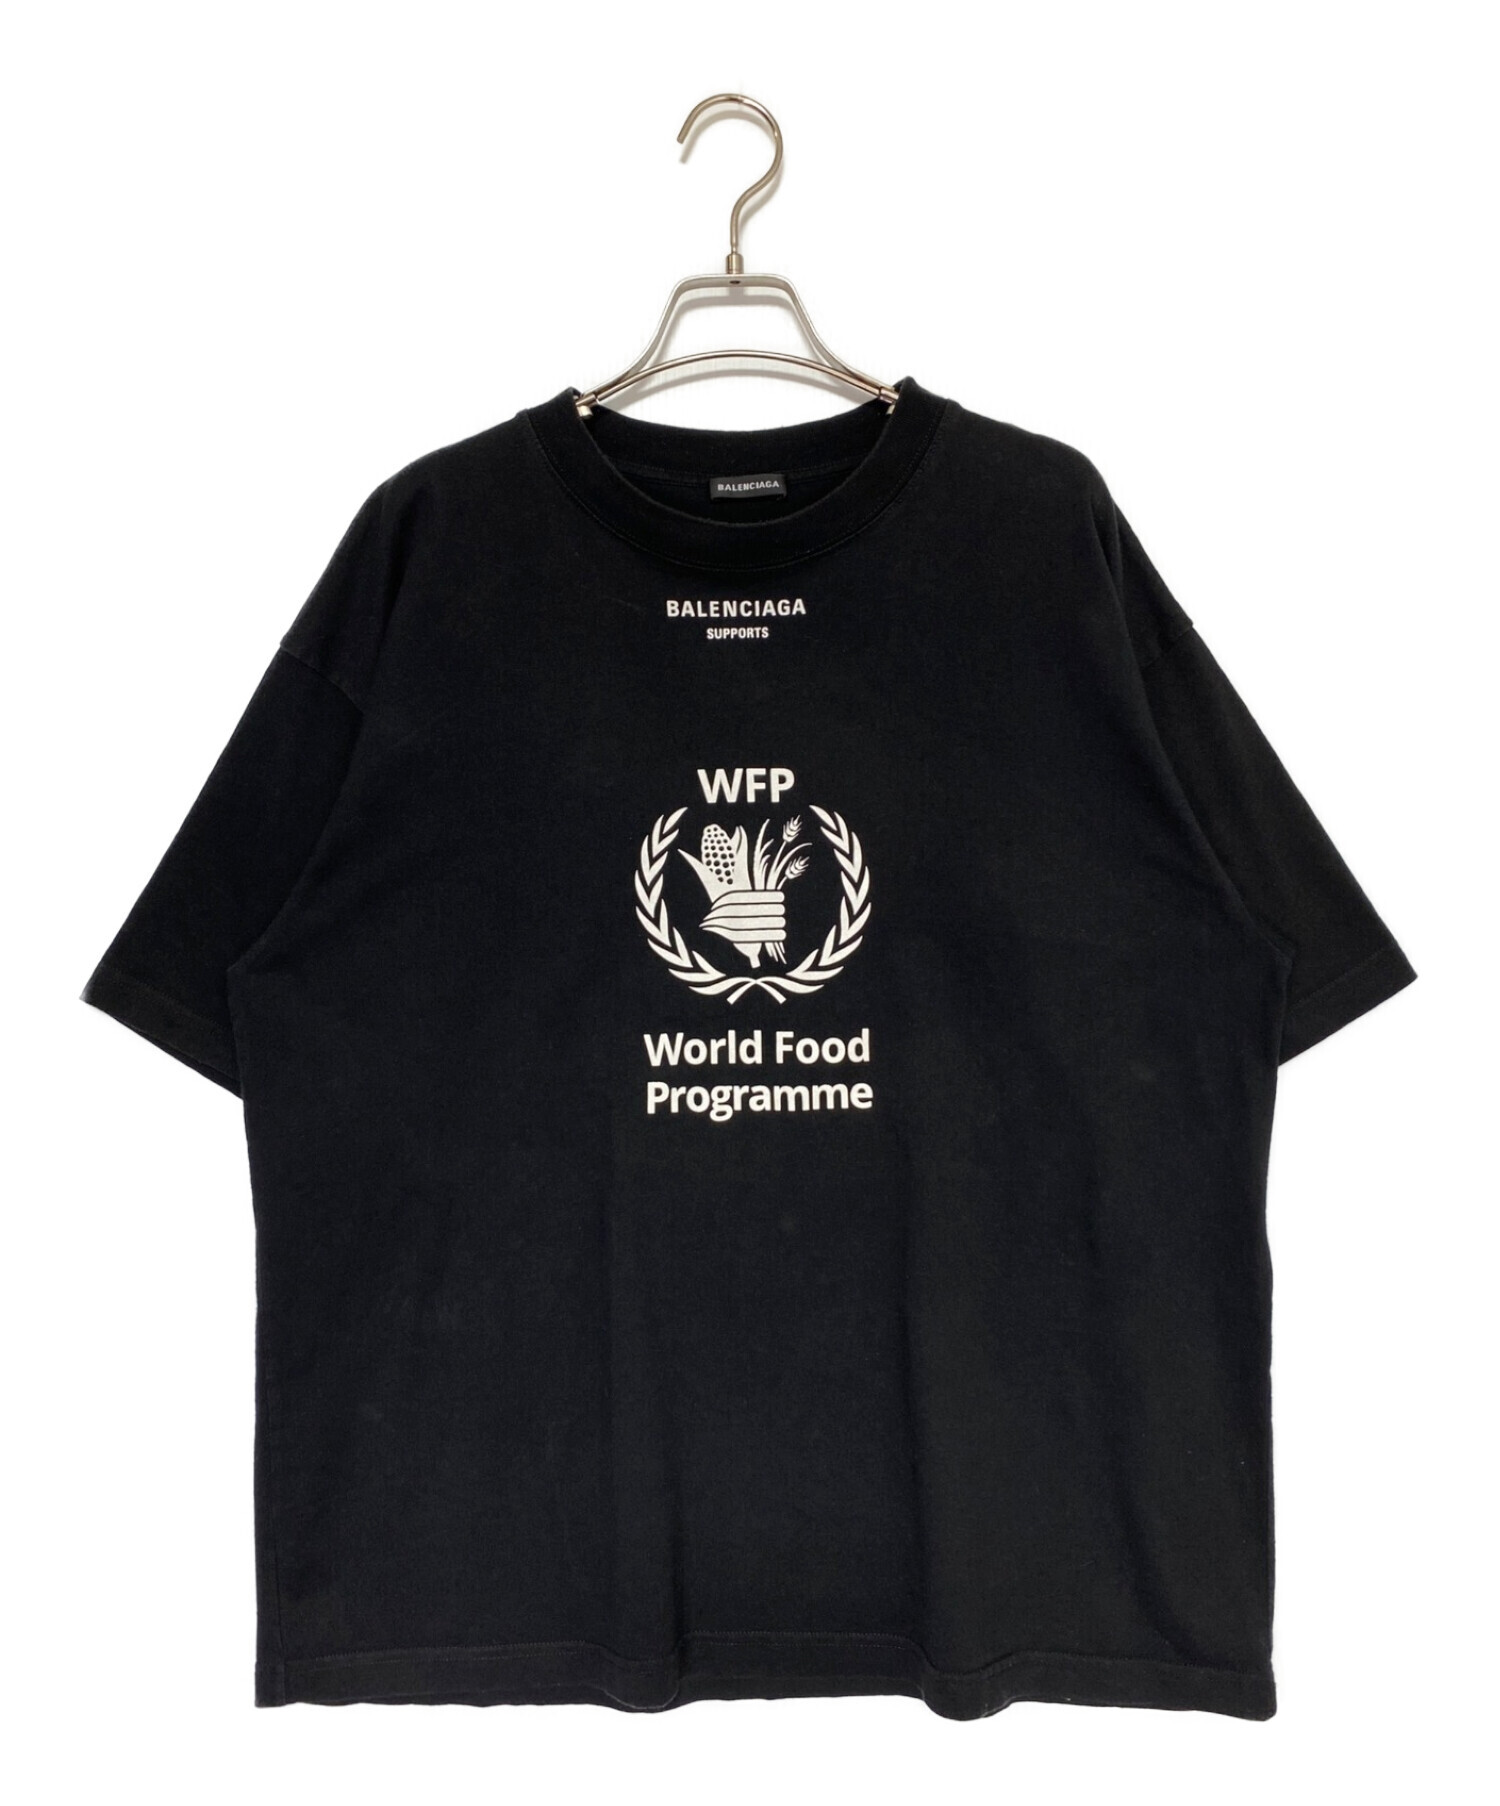 BALENCIAGA (バレンシアガ) WFP Tシャツ ブラック サイズ:S